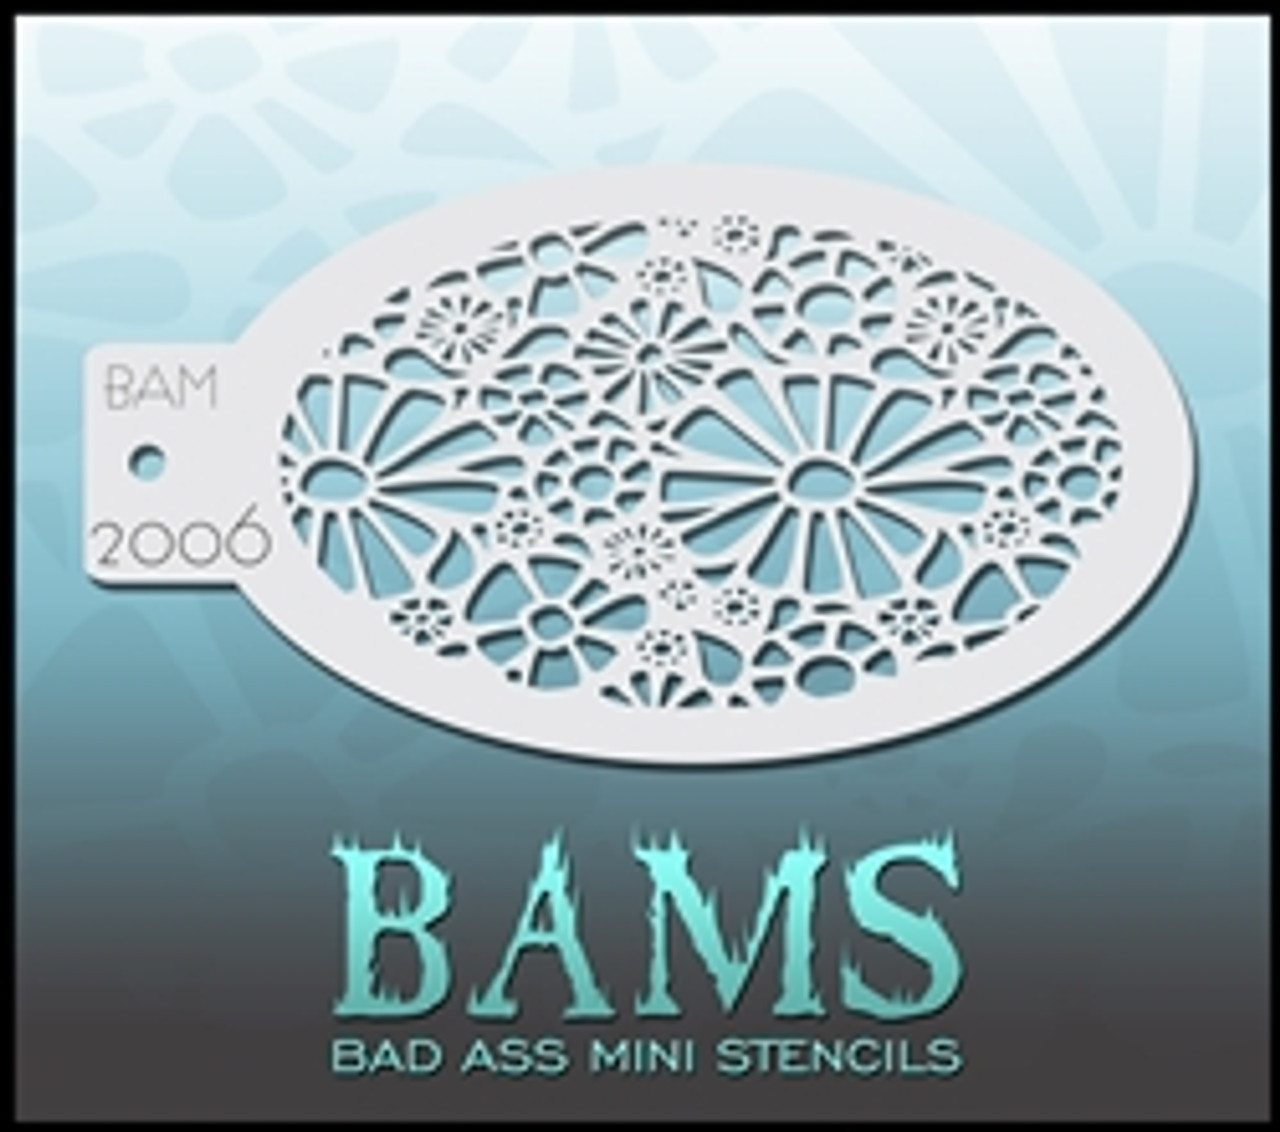 2006 Bad Ass Mini Stencil